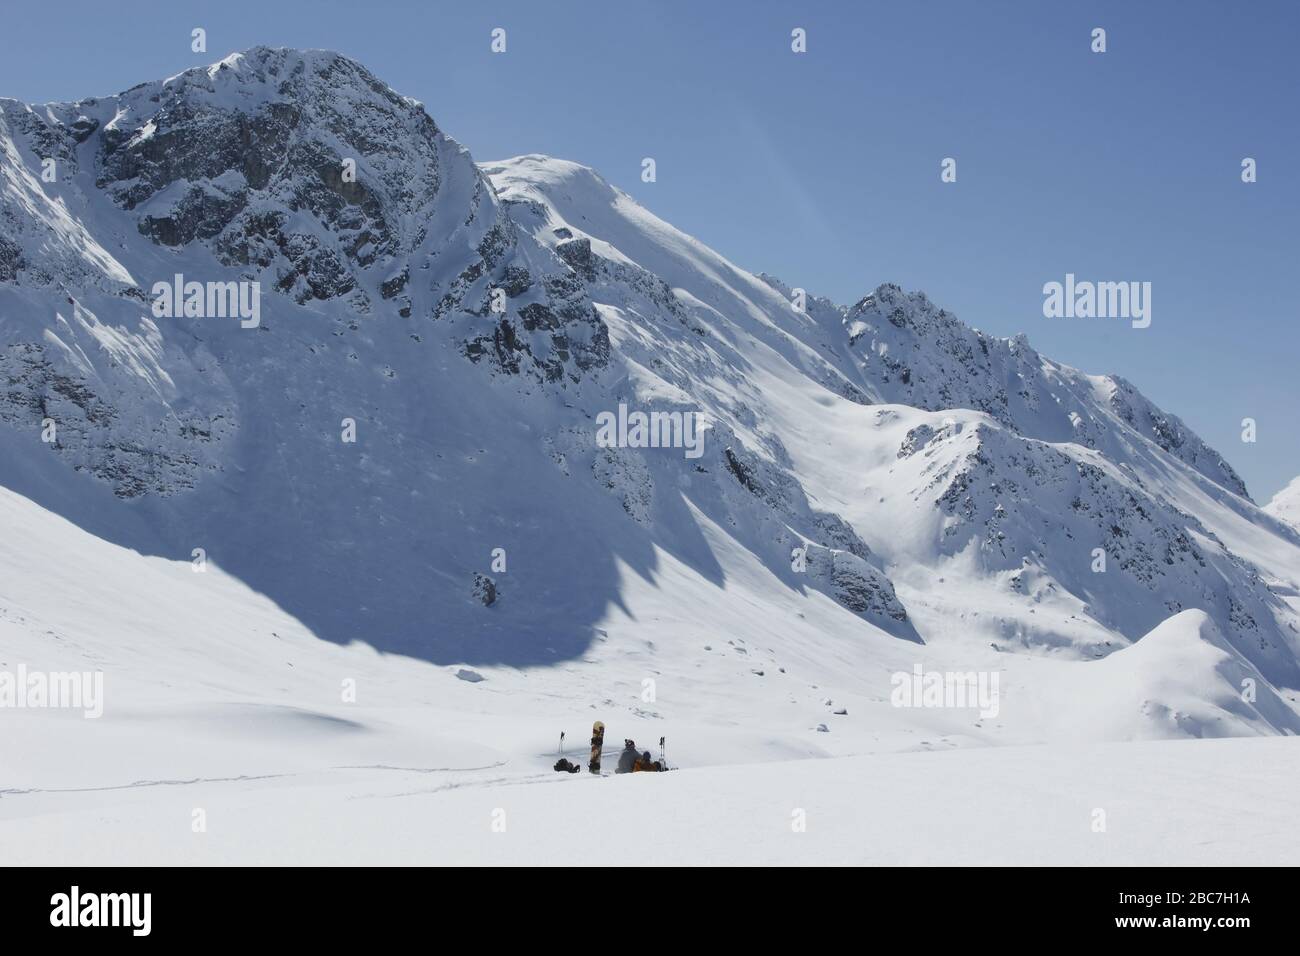 Bivio, Skitour Roccabella. Snowboardfahrer am Gipfelhang zur Roccabella. Blick auf Piz Grevasalvas. Stock Photo